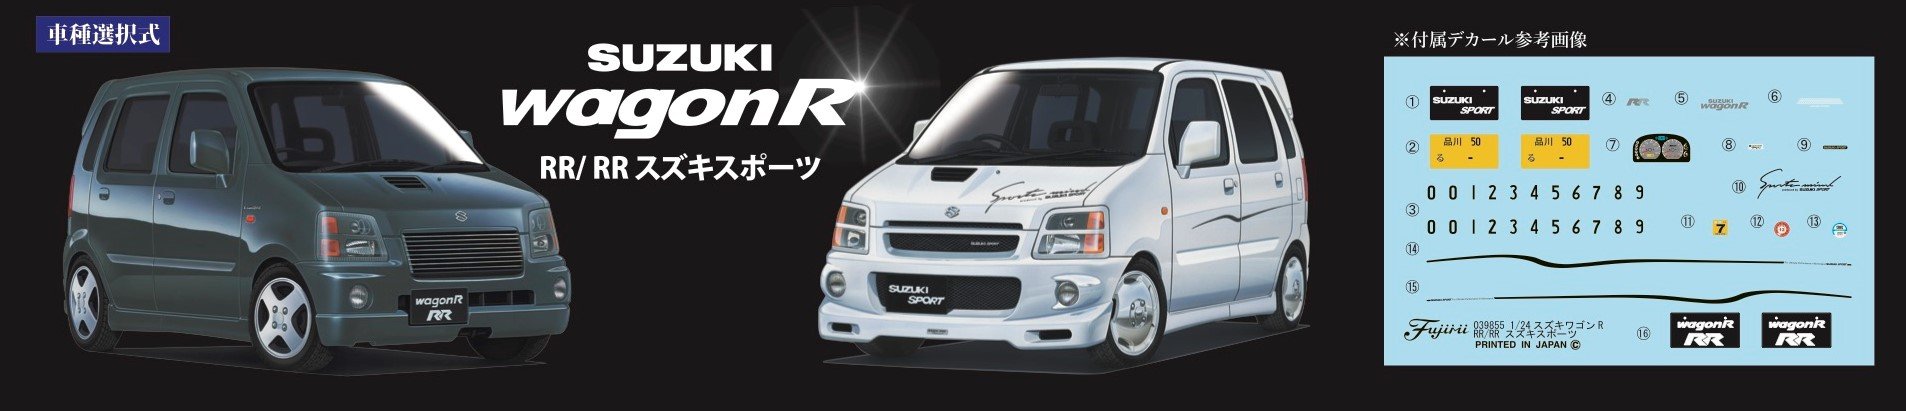 FUJIMI Id-45 Suzuki Wagon R Rr / Rr Suzuki Sports Kit à l'échelle 1/24